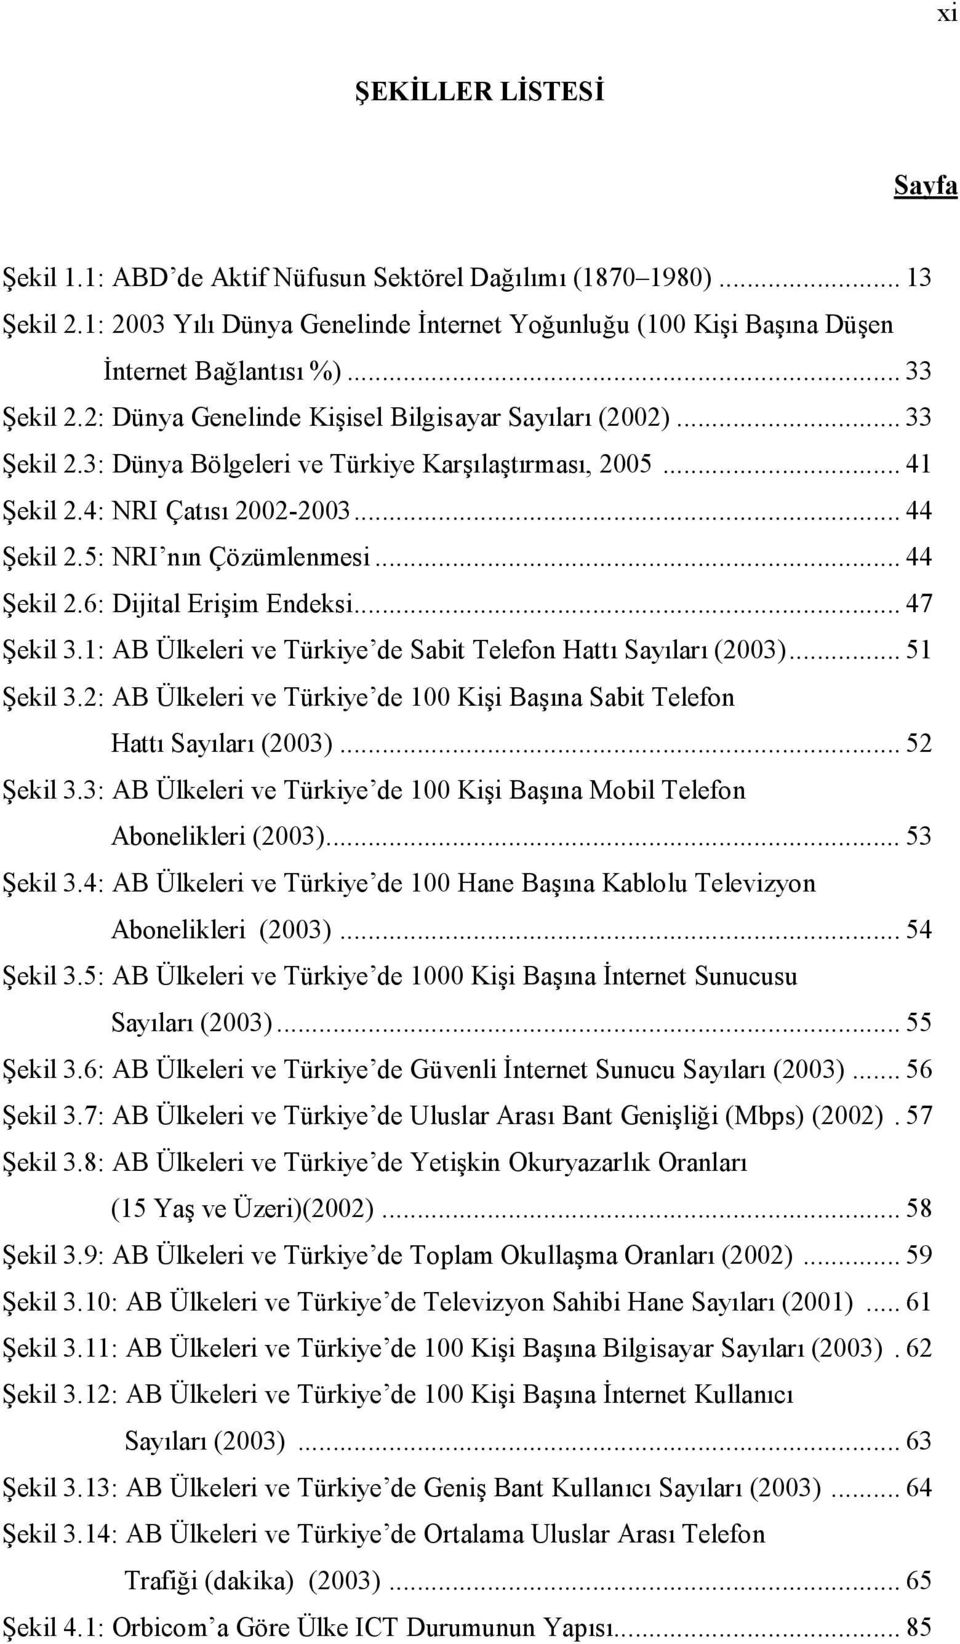 .. 47 ;ekil 3.1: AB Ülkeleri ve Türkiye de Sabit Telefon Hatt Saylar (2003)... 51 ;ekil 3.2: AB Ülkeleri ve Türkiye de 100 Kii Bana Sabit Telefon Hatt Saylar (2003)... 52 ;ekil 3.